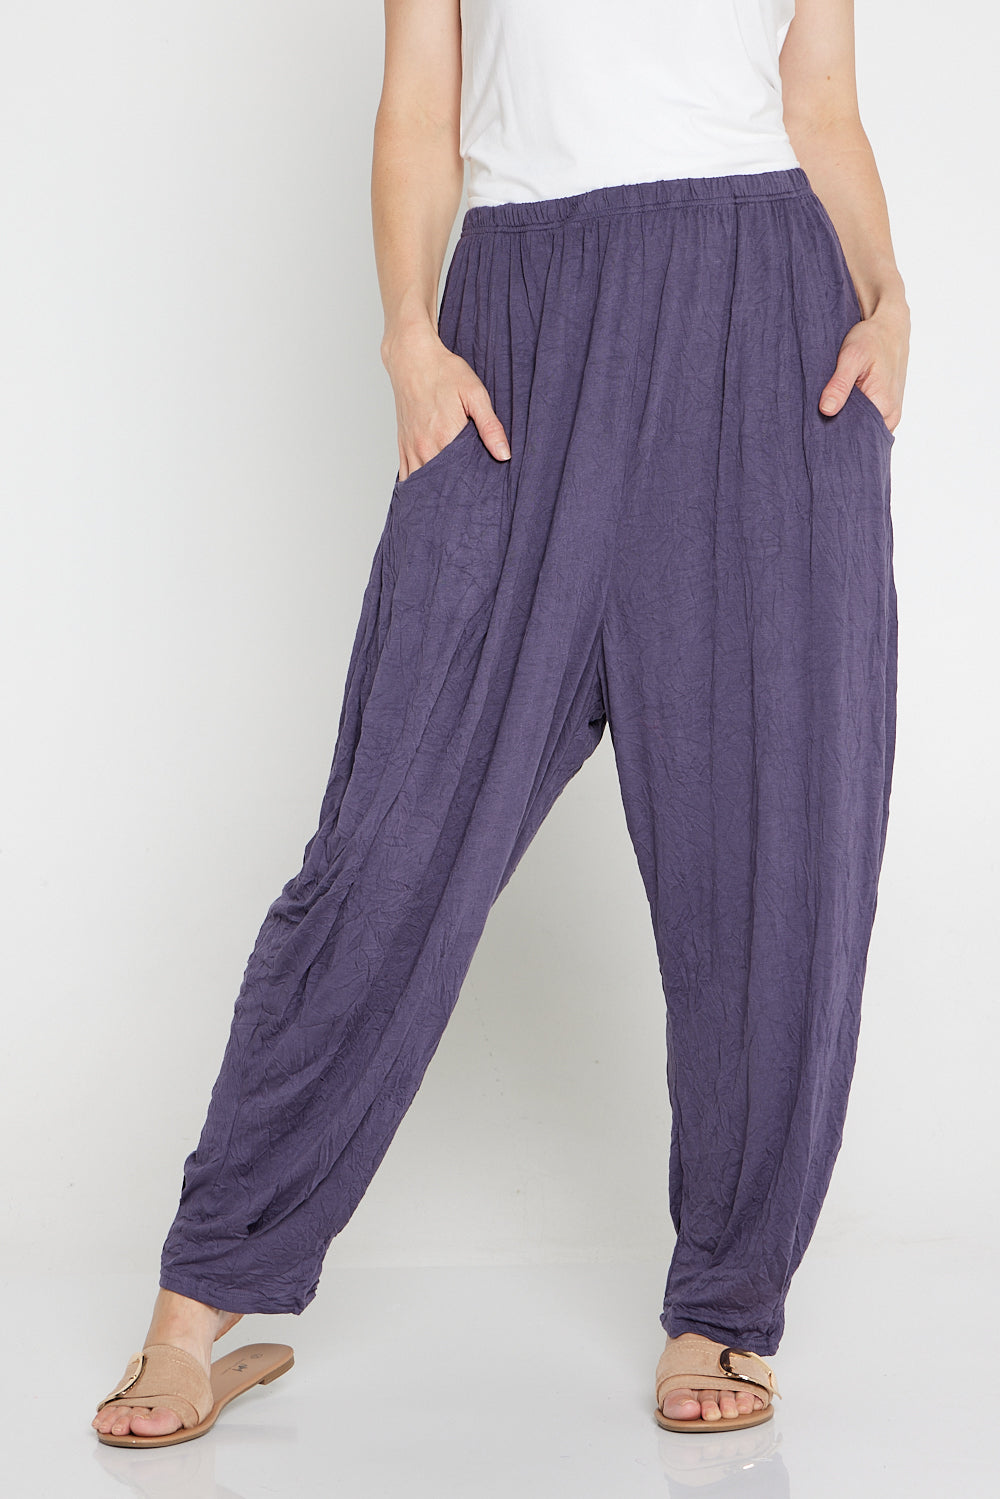 Alisha Pants - Inky Charcoal | Cotton Village | TULIO Fashion